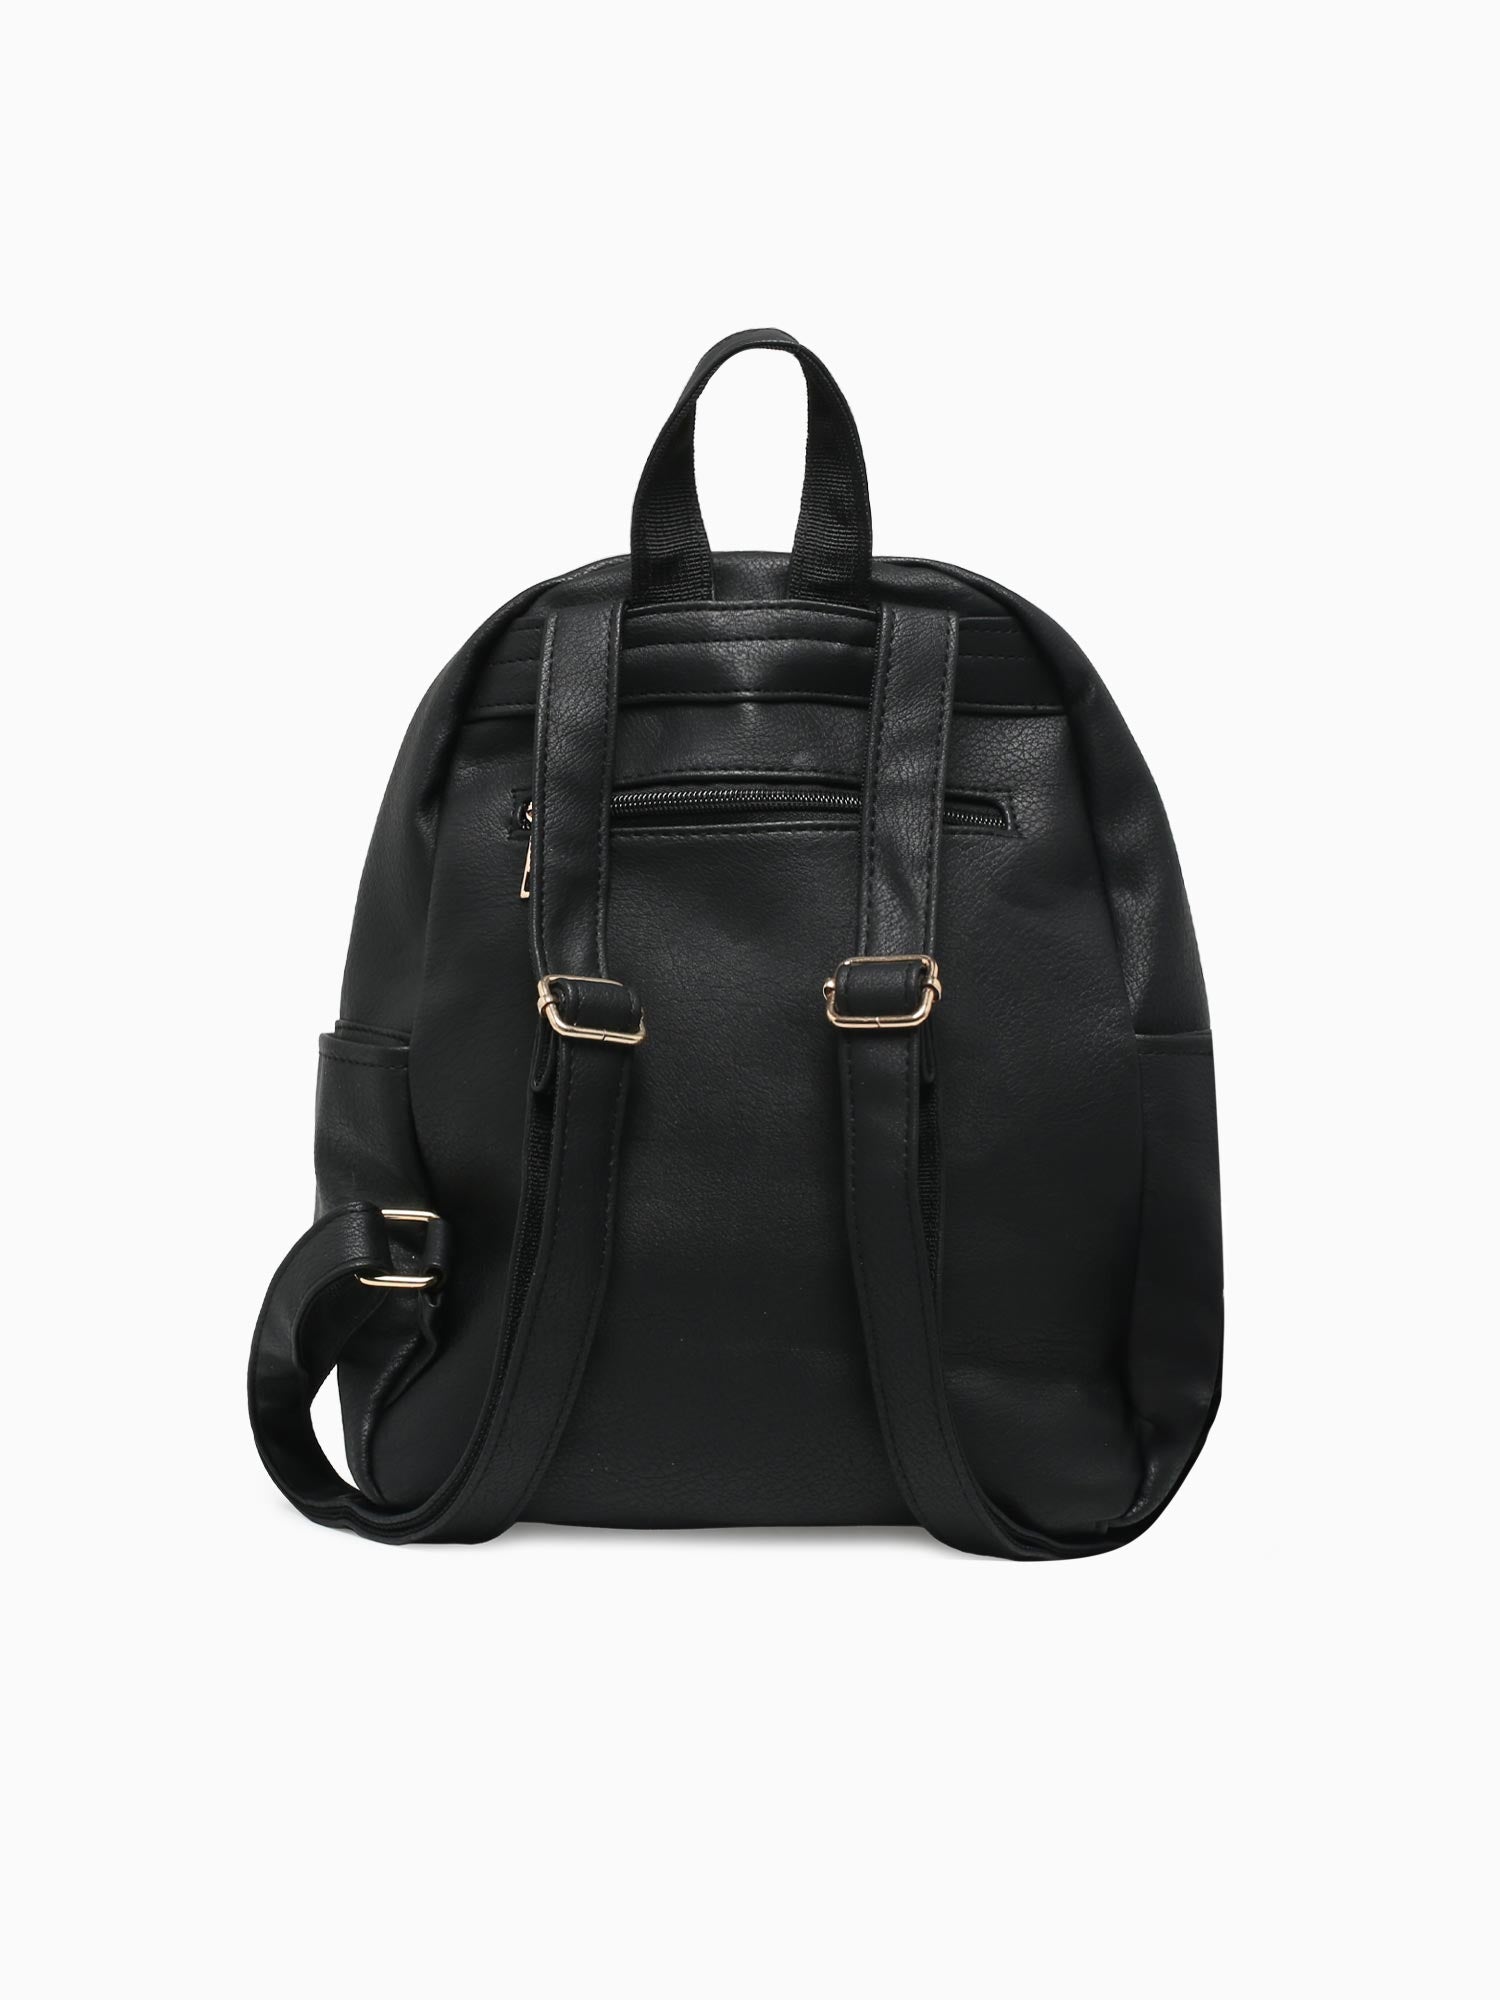 Multiuse Backpack Black Multi Black Multi